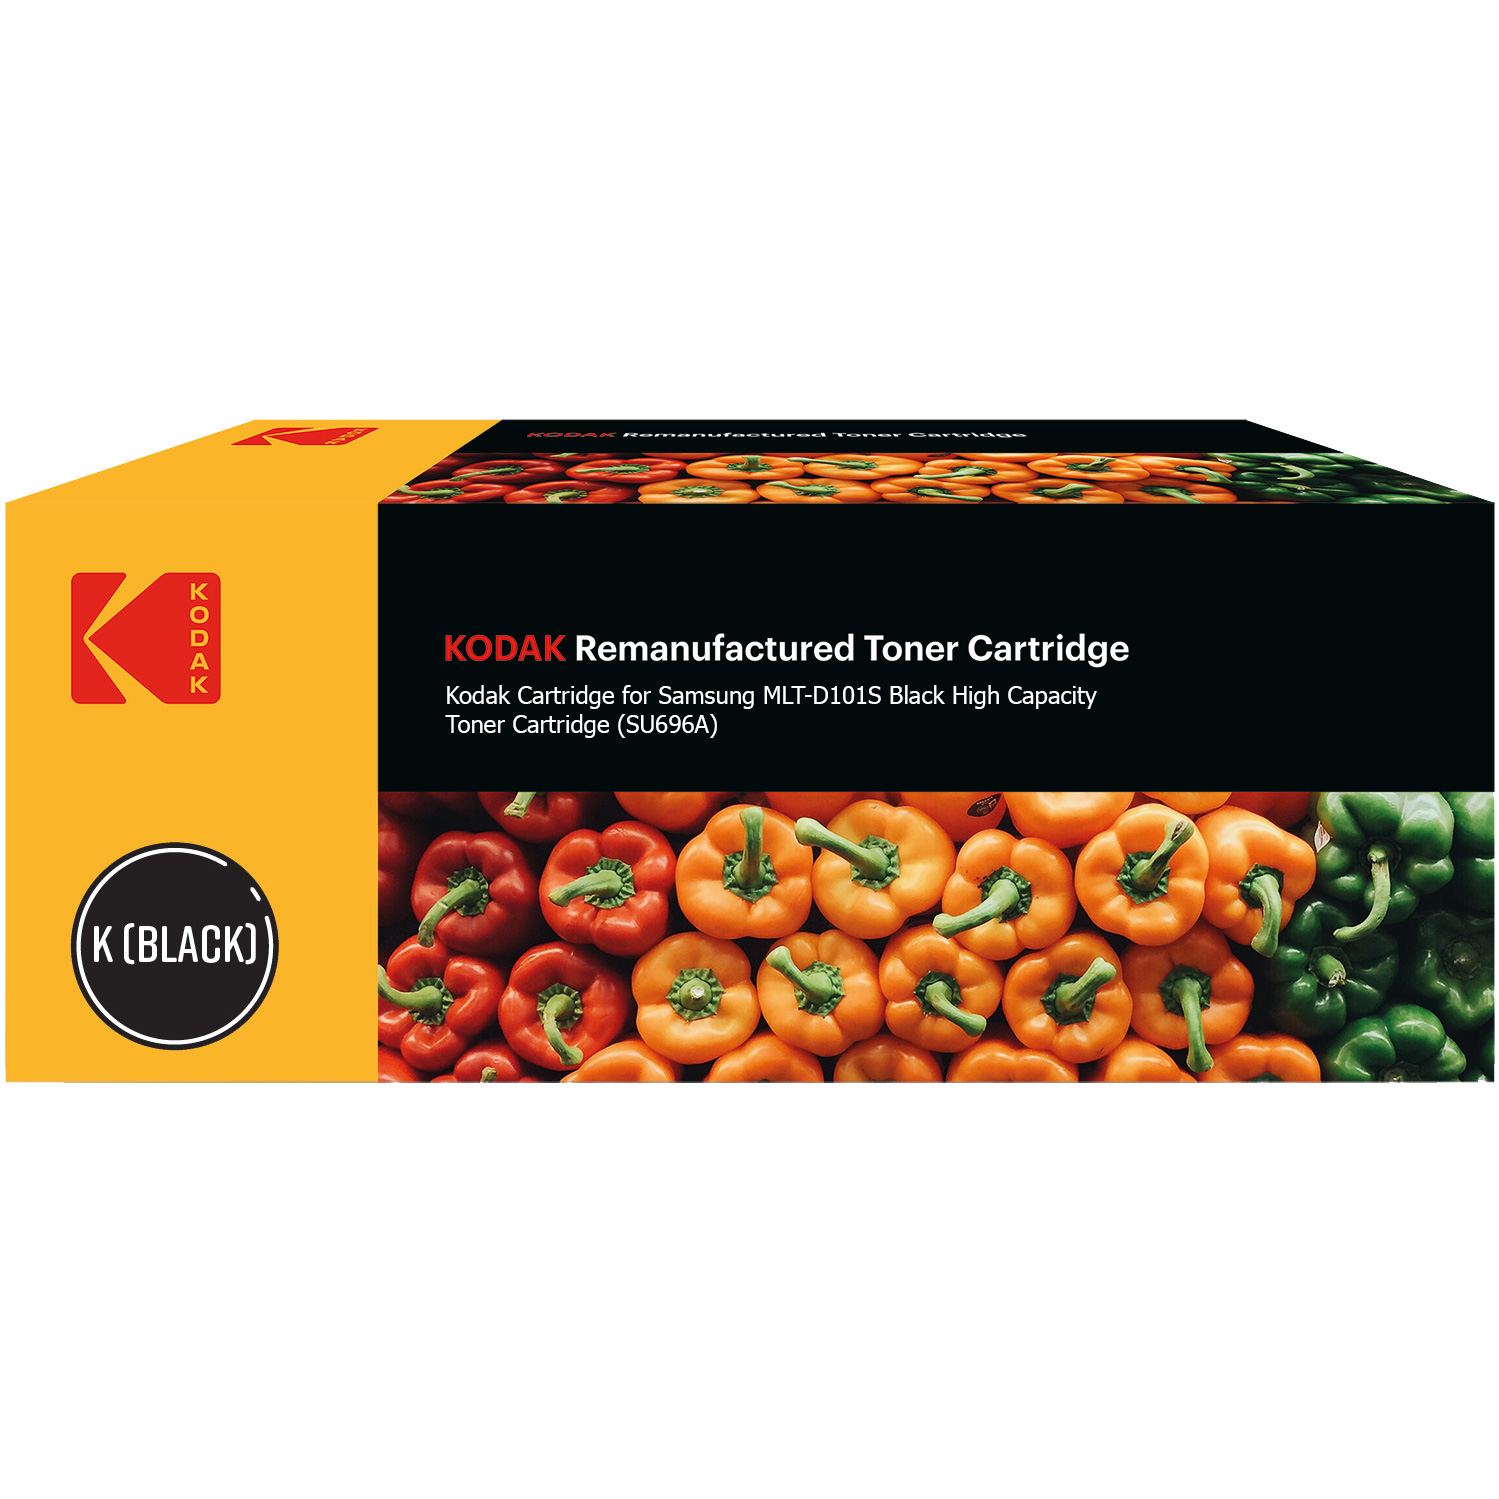 Kodak Ultimate Samsung MLT-D101S Black High Capacity Toner Cartridge (SU696A) (Kodak KODMLTD101S)